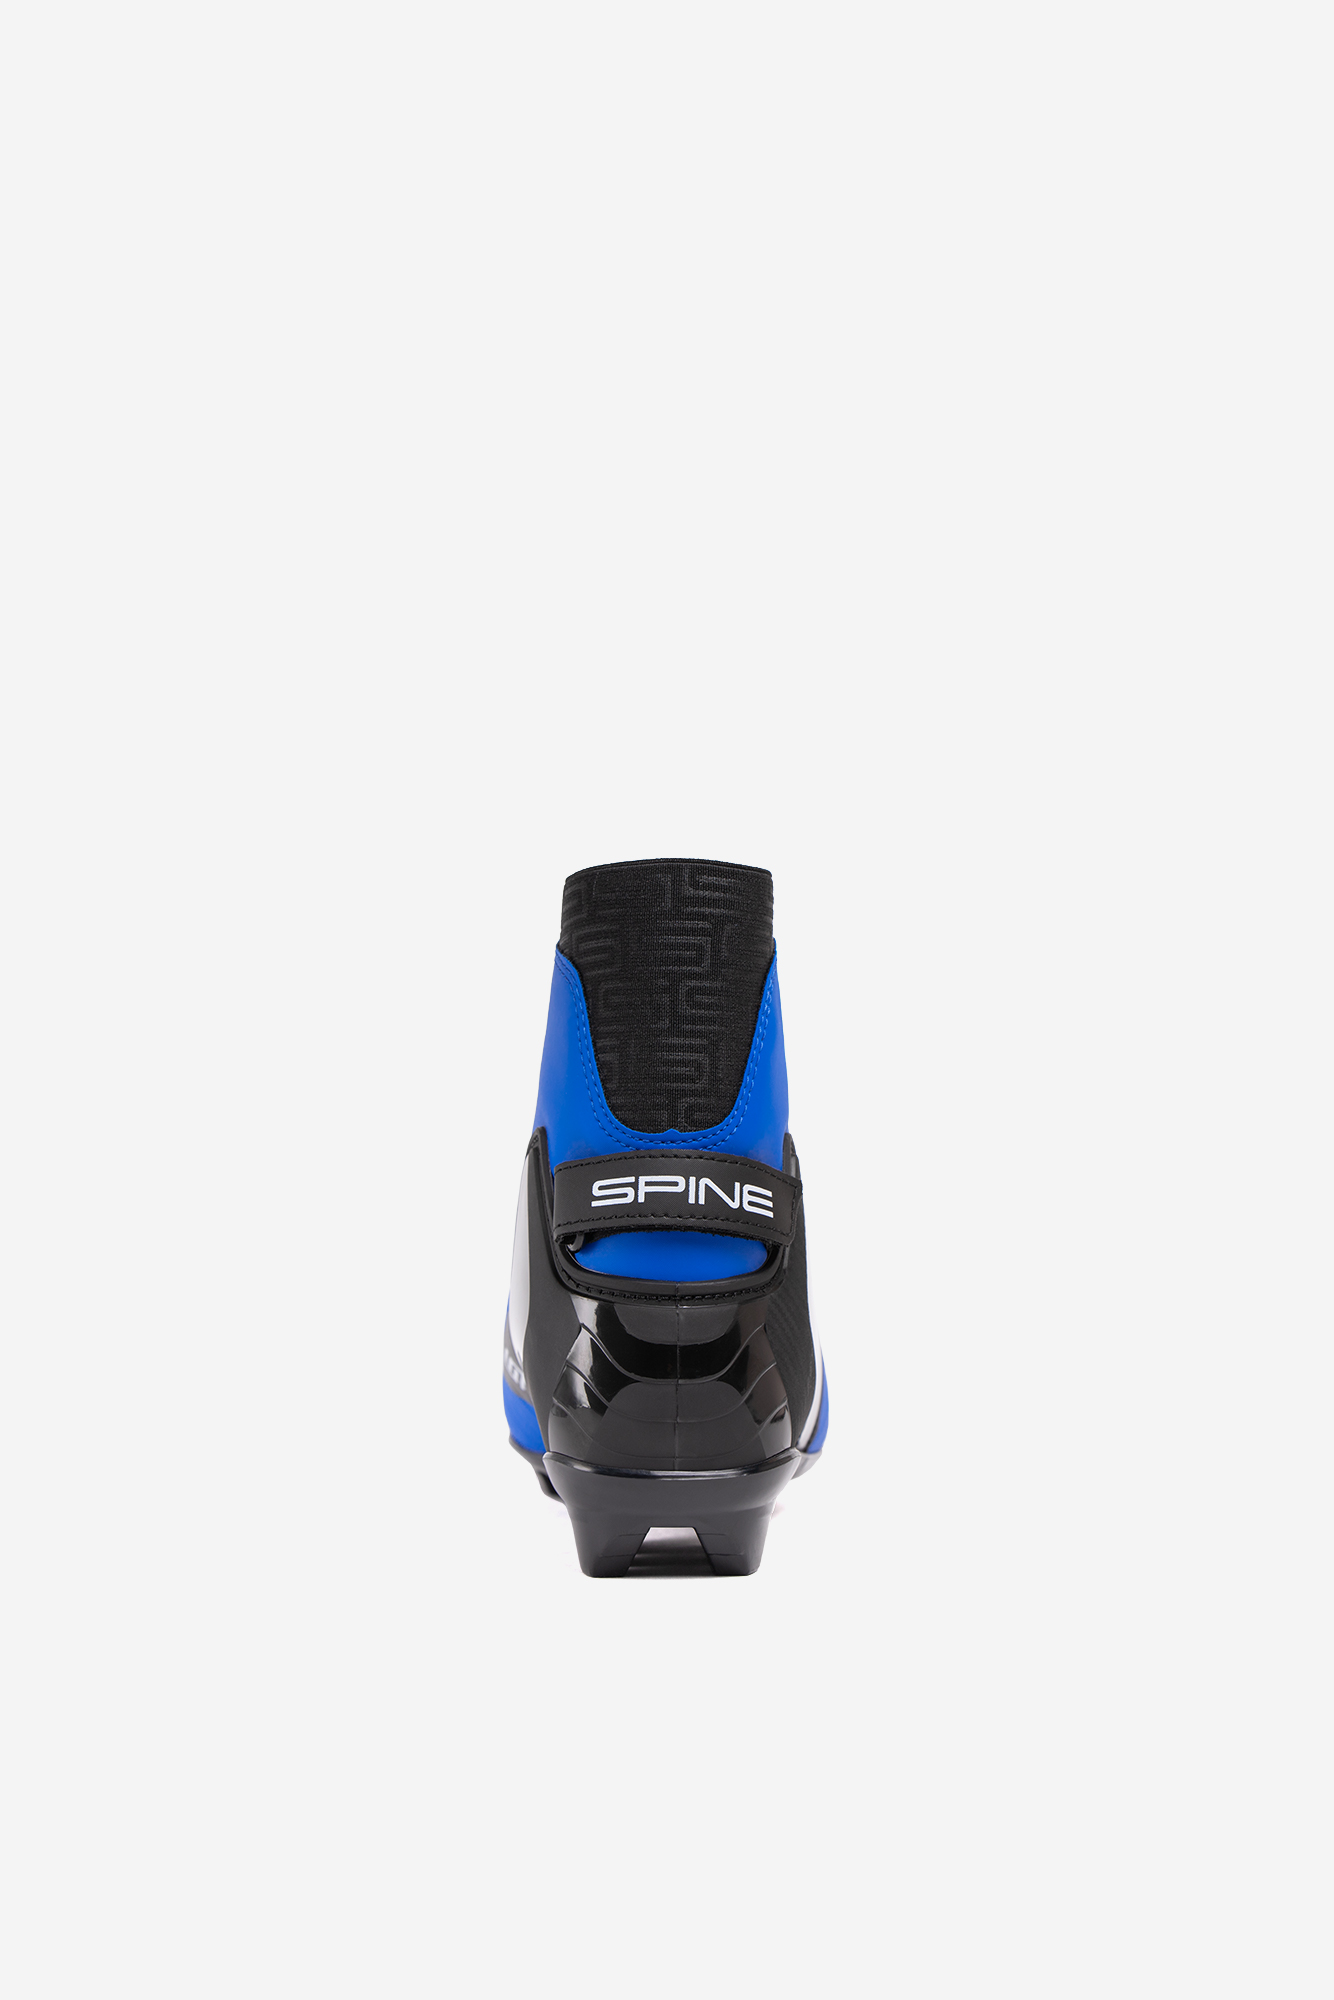 Лыжные ботинки SNS Spine Concept Classic (494/1-22) (синий) 1334_2000